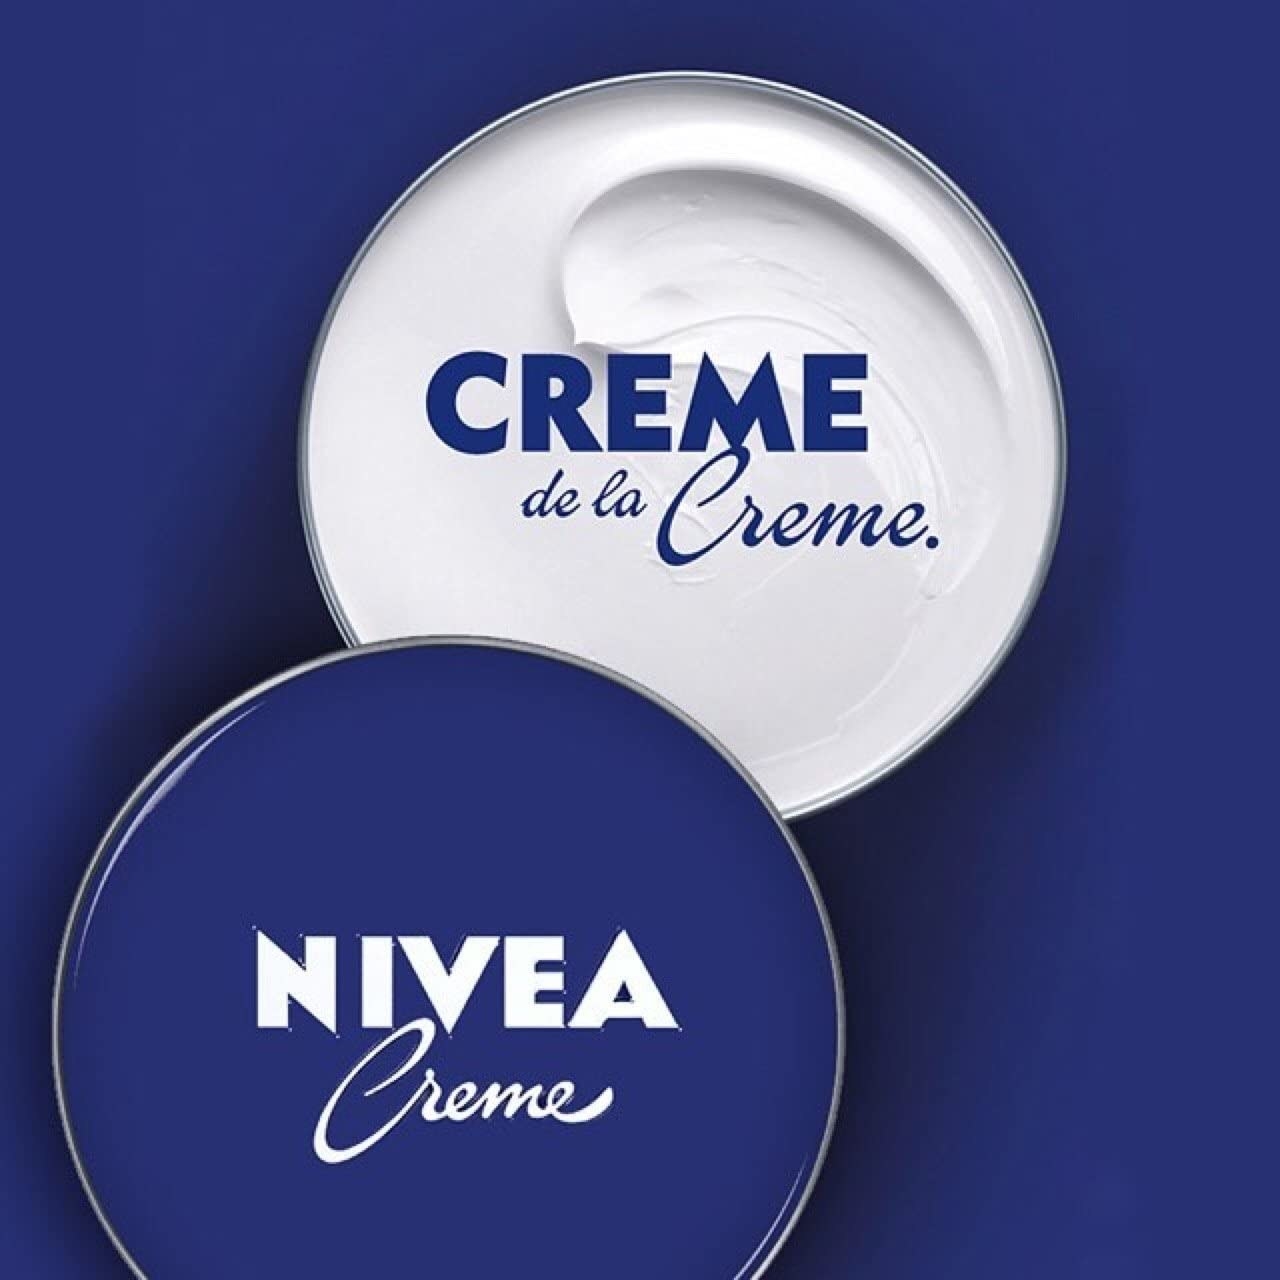 An open tub of nivea cream